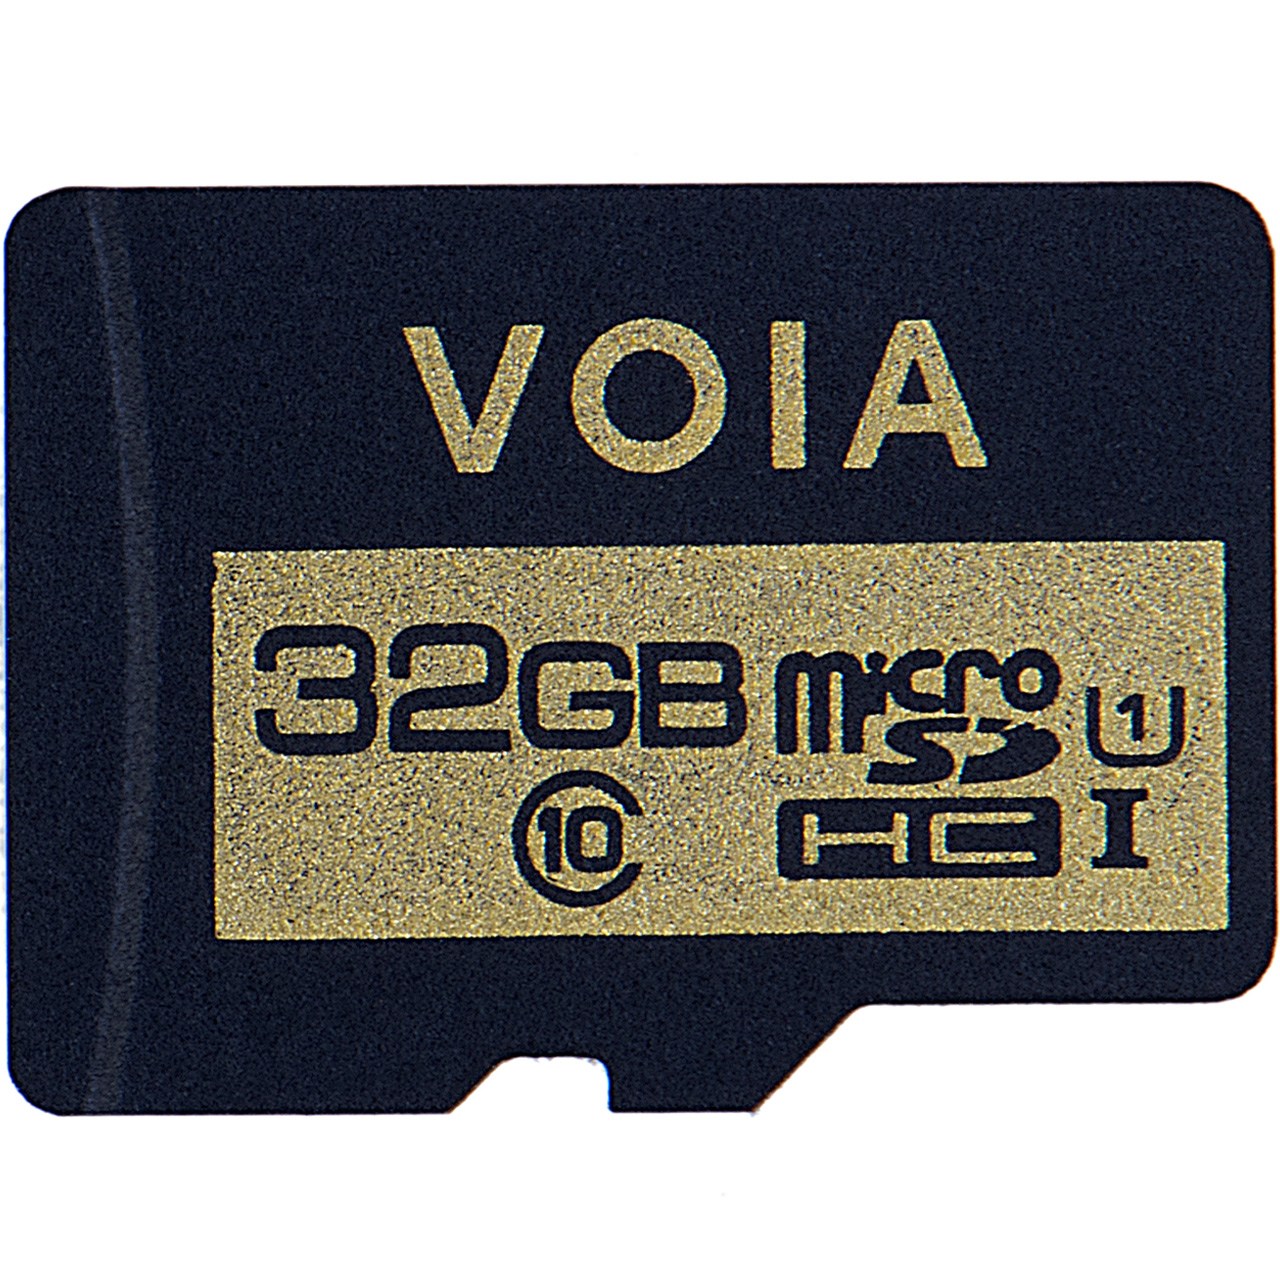 کارت حافظه microSDHC وویا کلاس 10 استاندارد UHS-I U1 ظرفیت 32 گیگابایت